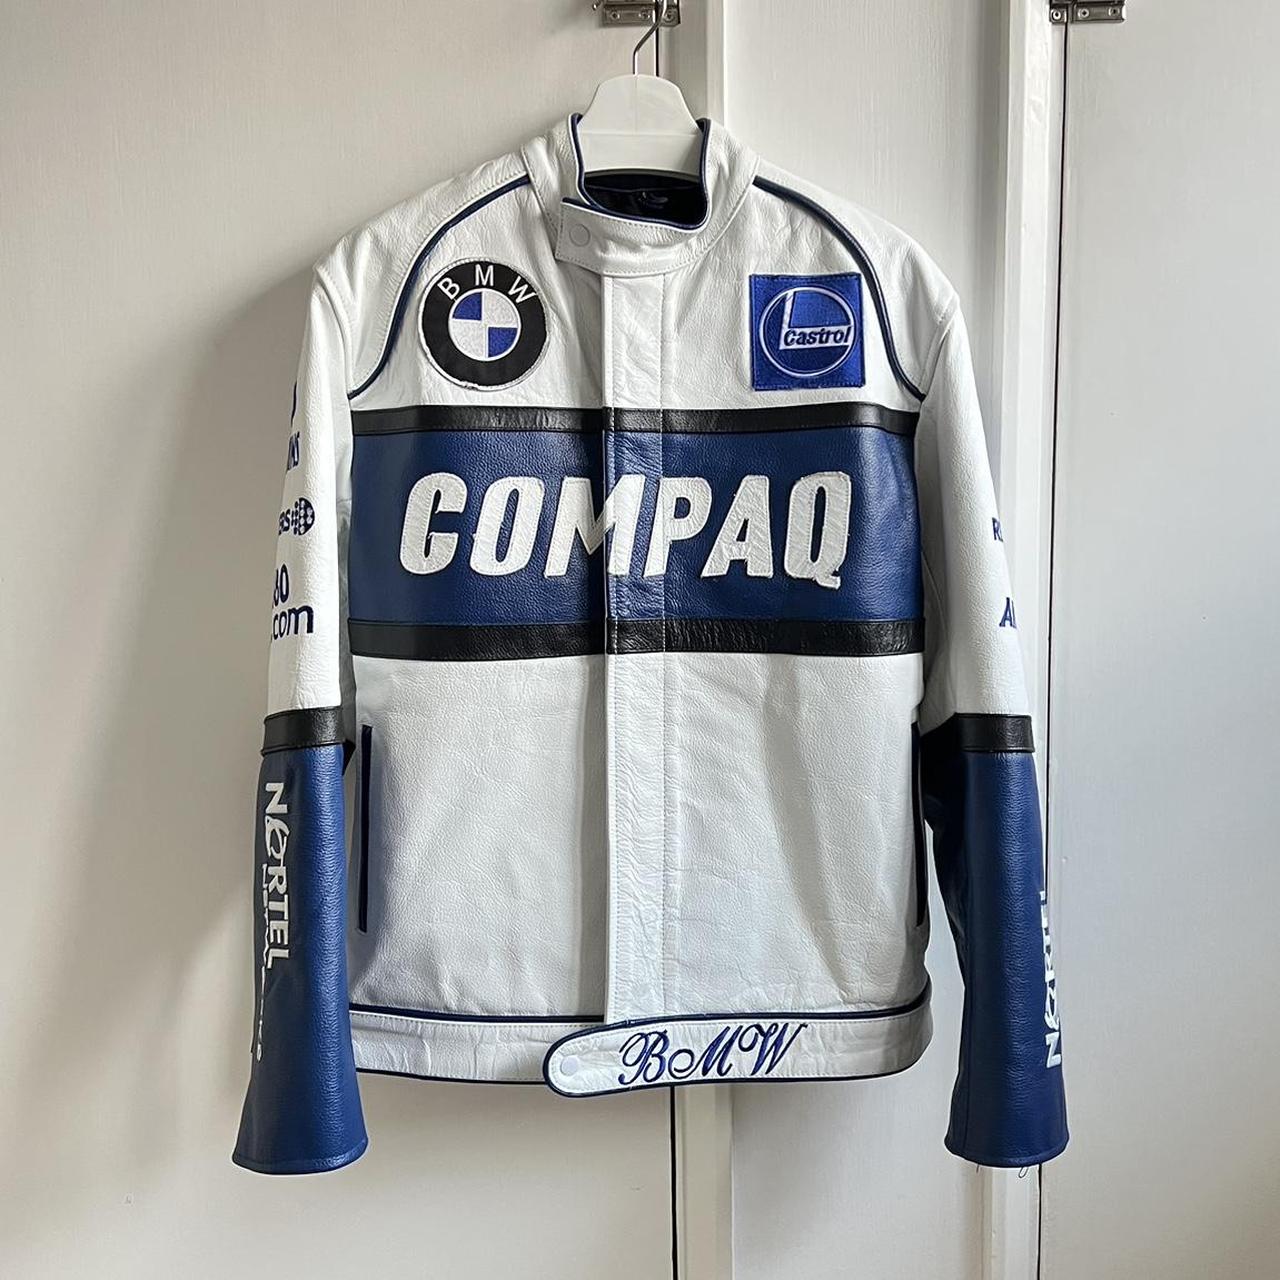 BMW vintage compaq leather biker jacket Size... - Depop